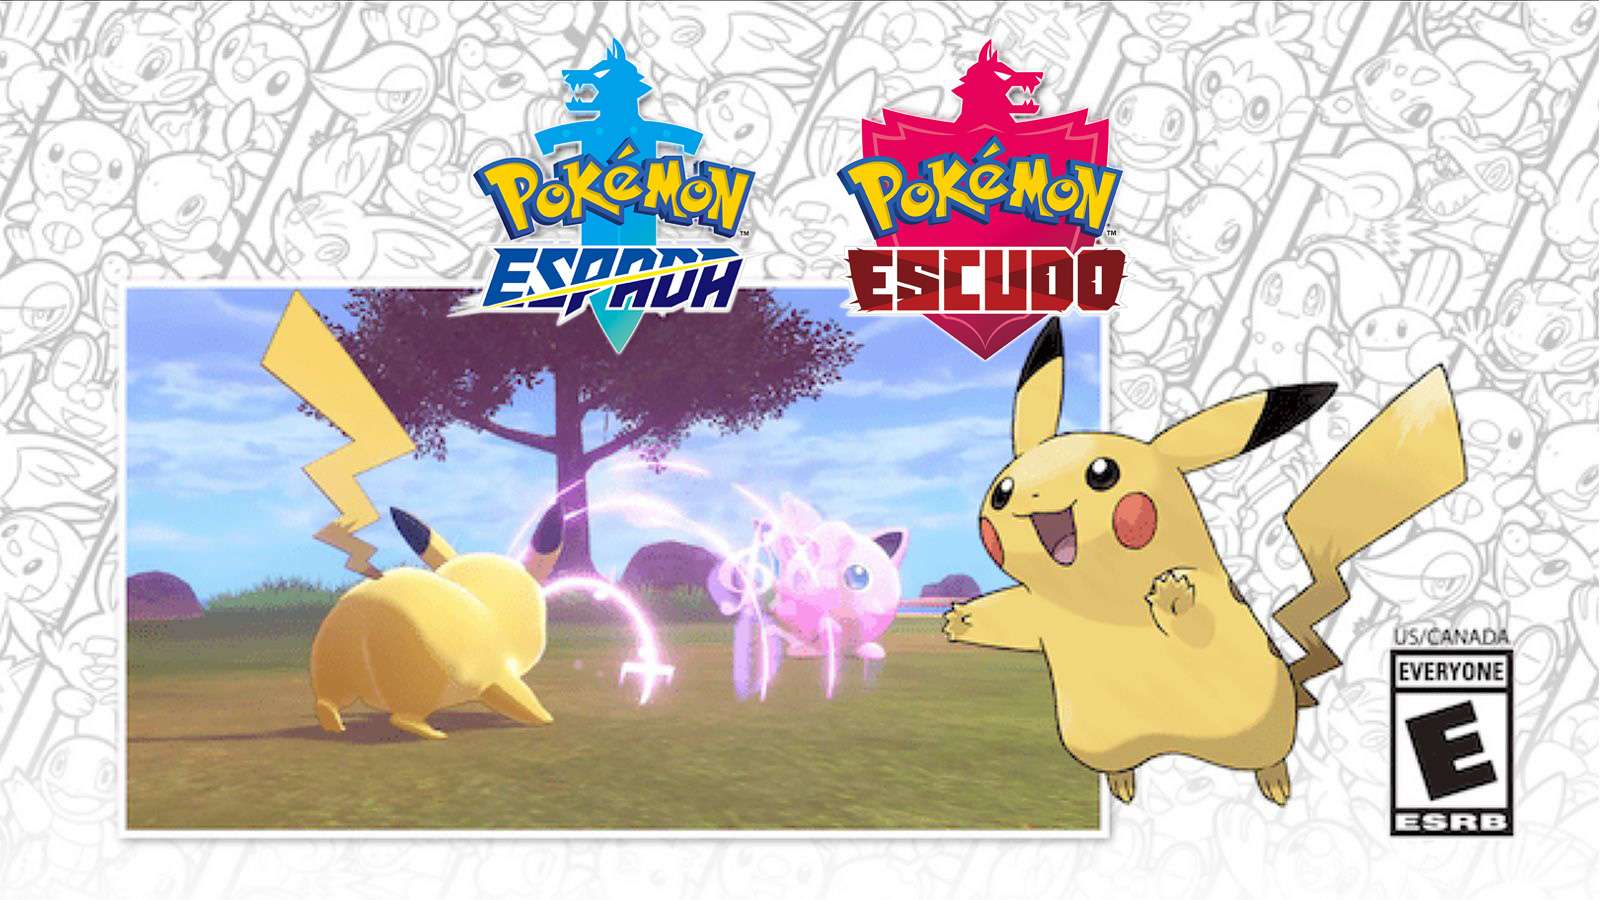 Pokachu promoción Pokémon Espada Escudo concierto